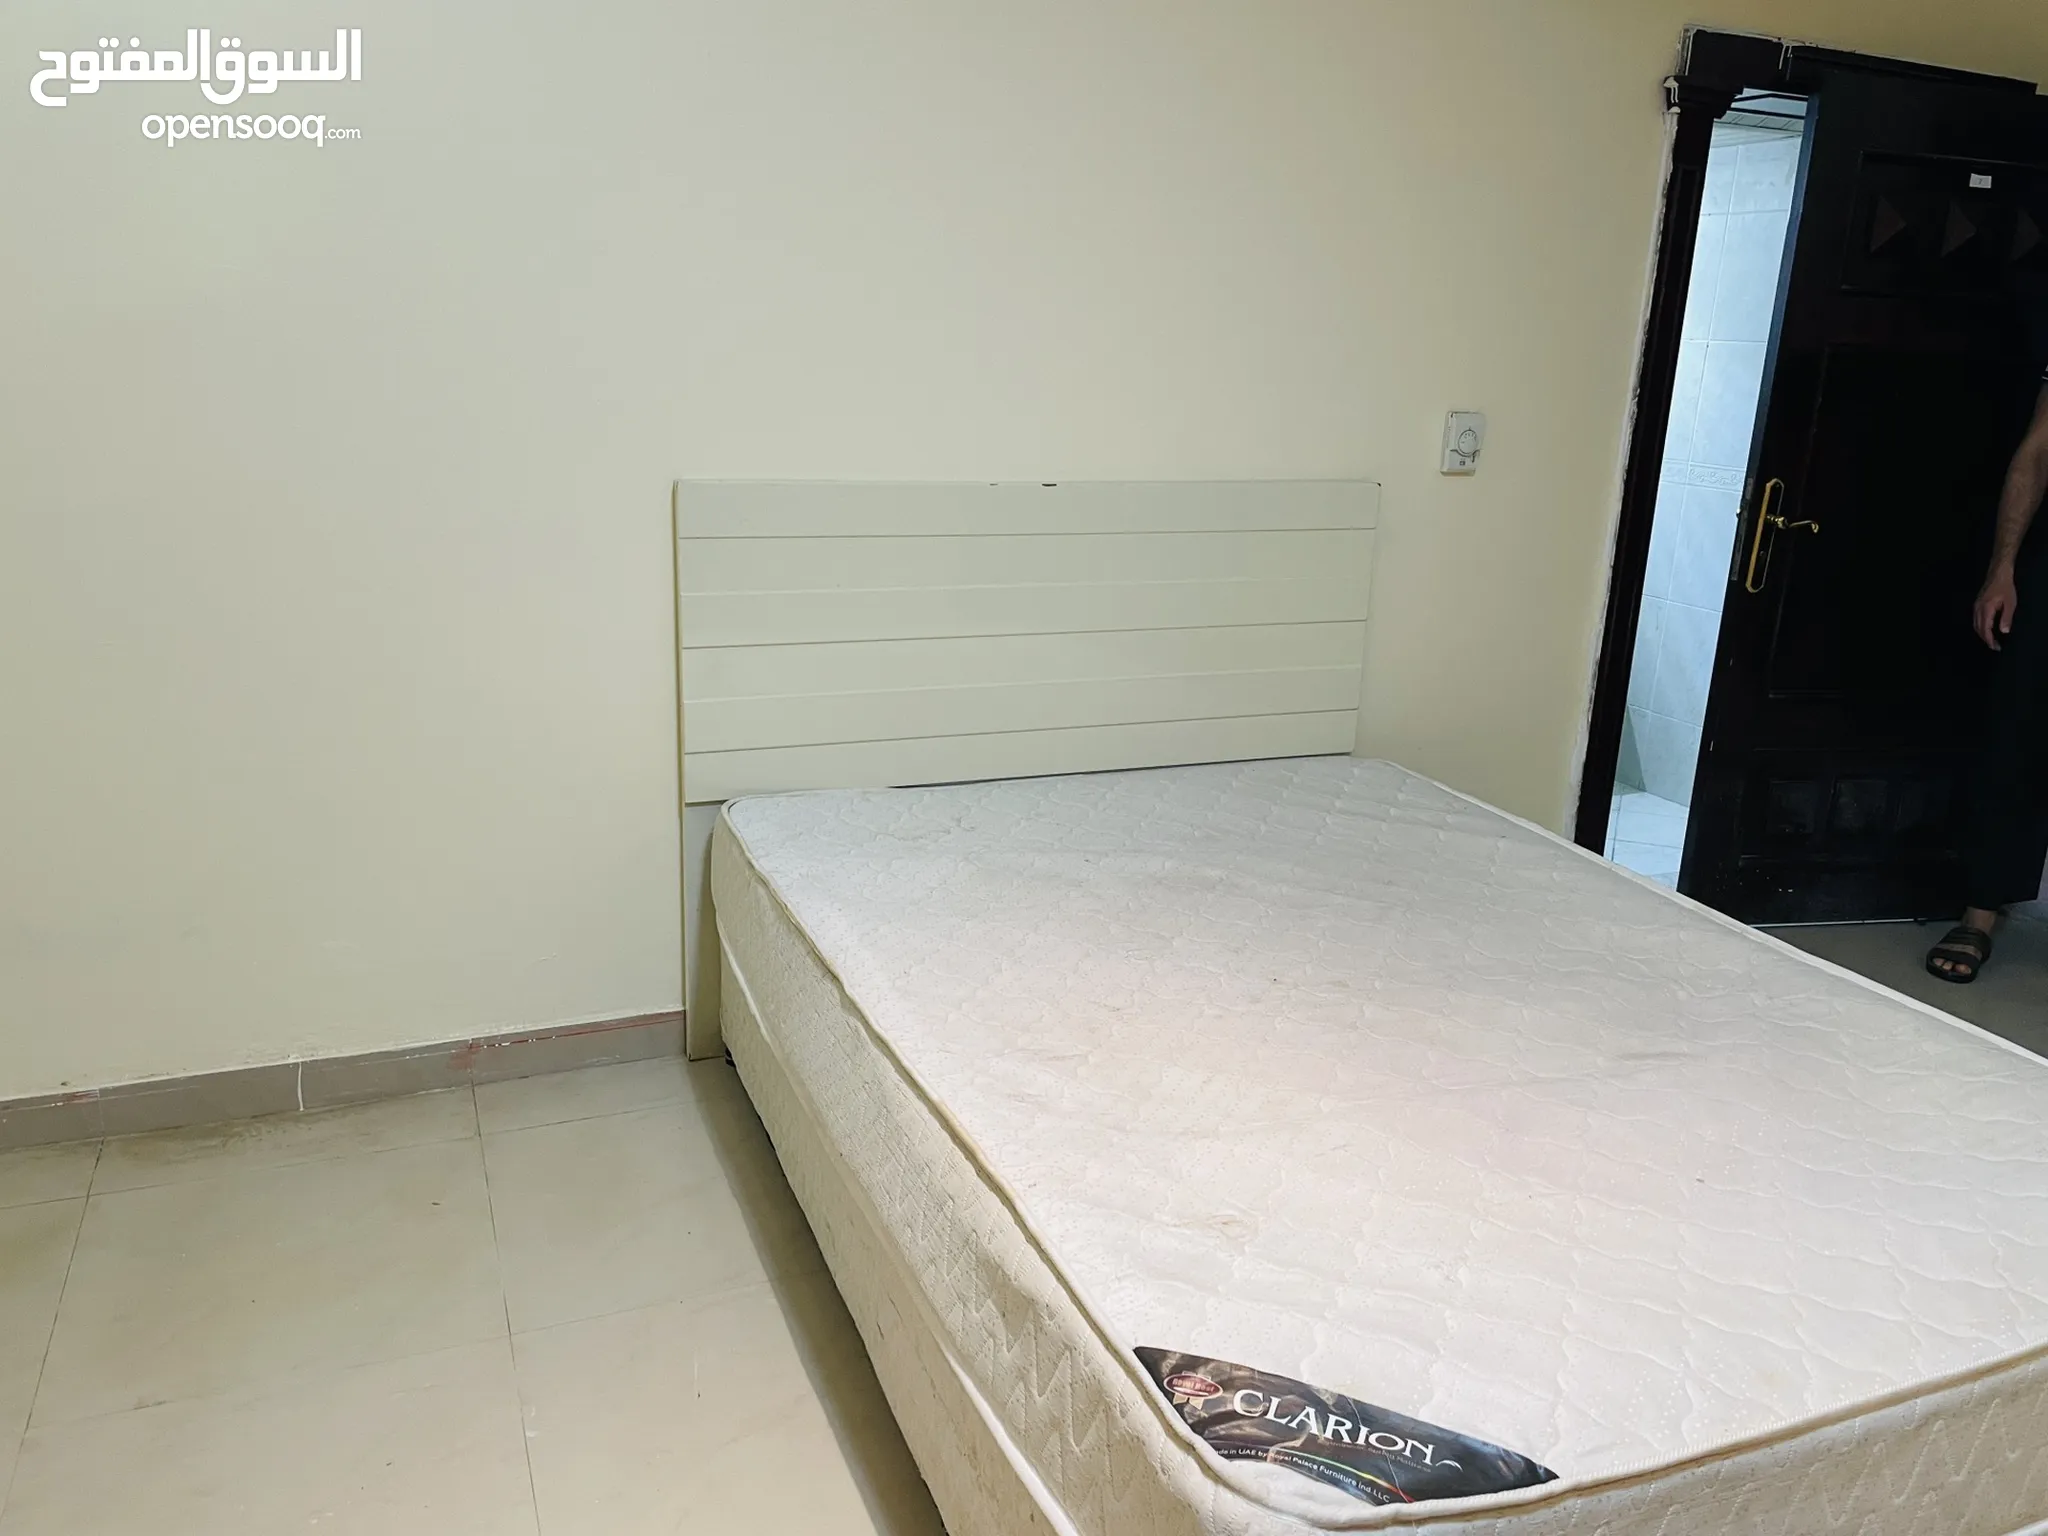 غرف نوم : سرير نوم للبيع : سرير دورين : سرير نفر ونص : سرير حديد وخشب :  ايكيا : ارخص الاسعار في الإمارات | السوق المفتوح